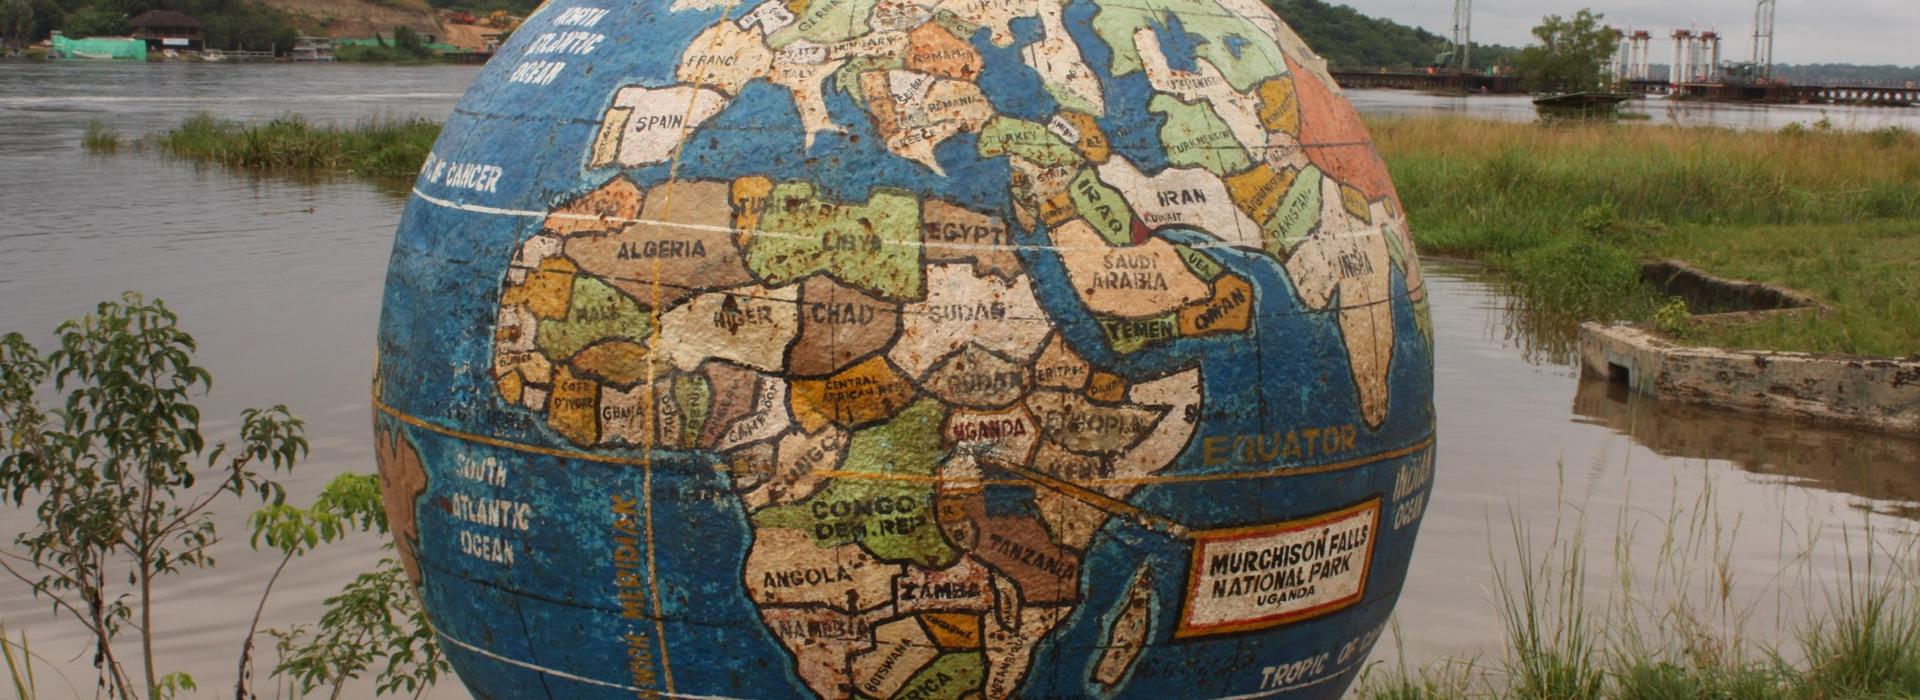 Globe in Uganda